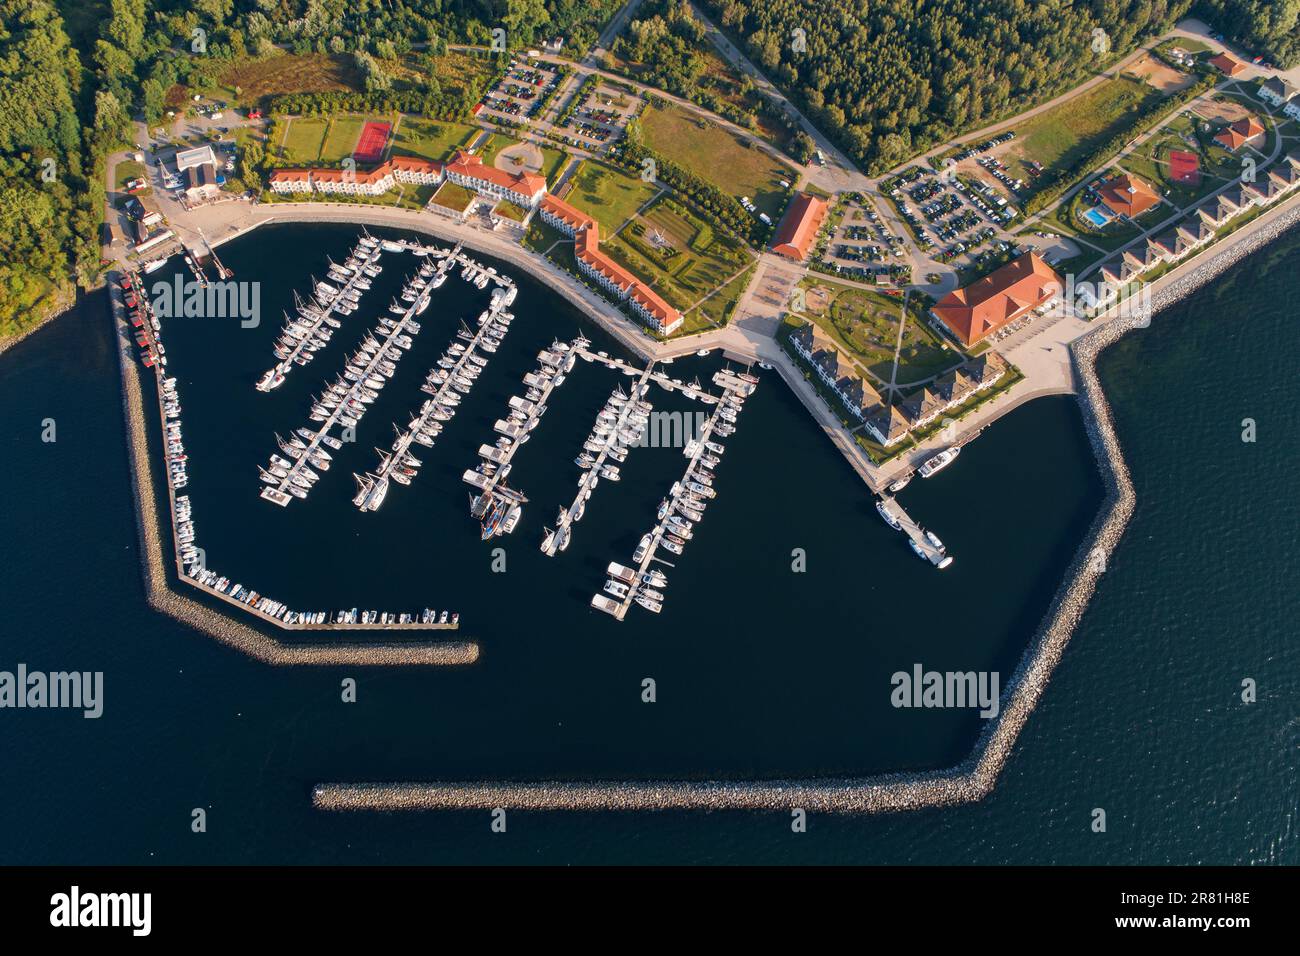 Mecklenburg-Vorpommern, Seaside resort Boltenhagen, Weisse Wiek, port, harbour, yacht club, aerial view Stock Photo